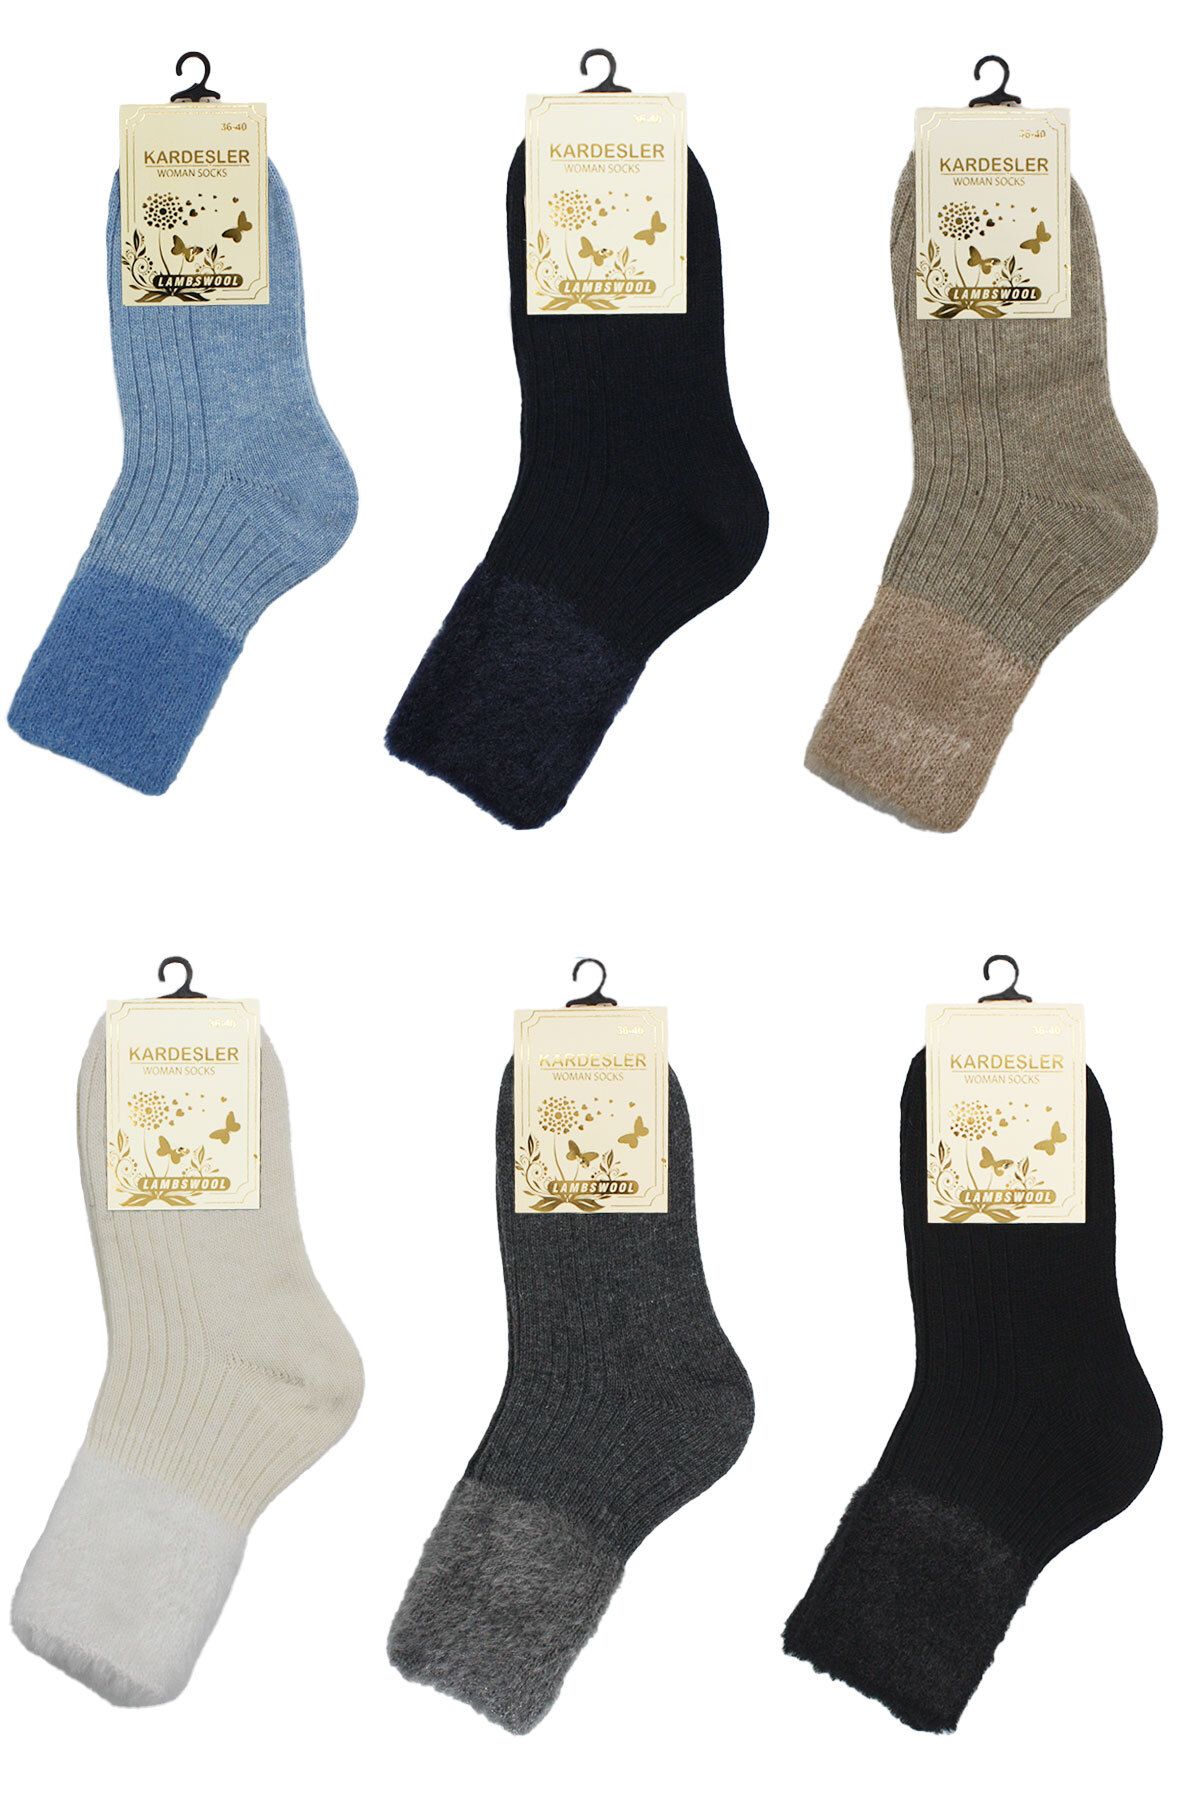 KARDEŞLER ÇORAP Kadın Lambswool Yün Kışlık Çok Renkli Yarım Konç Çorap 6'lı Paket